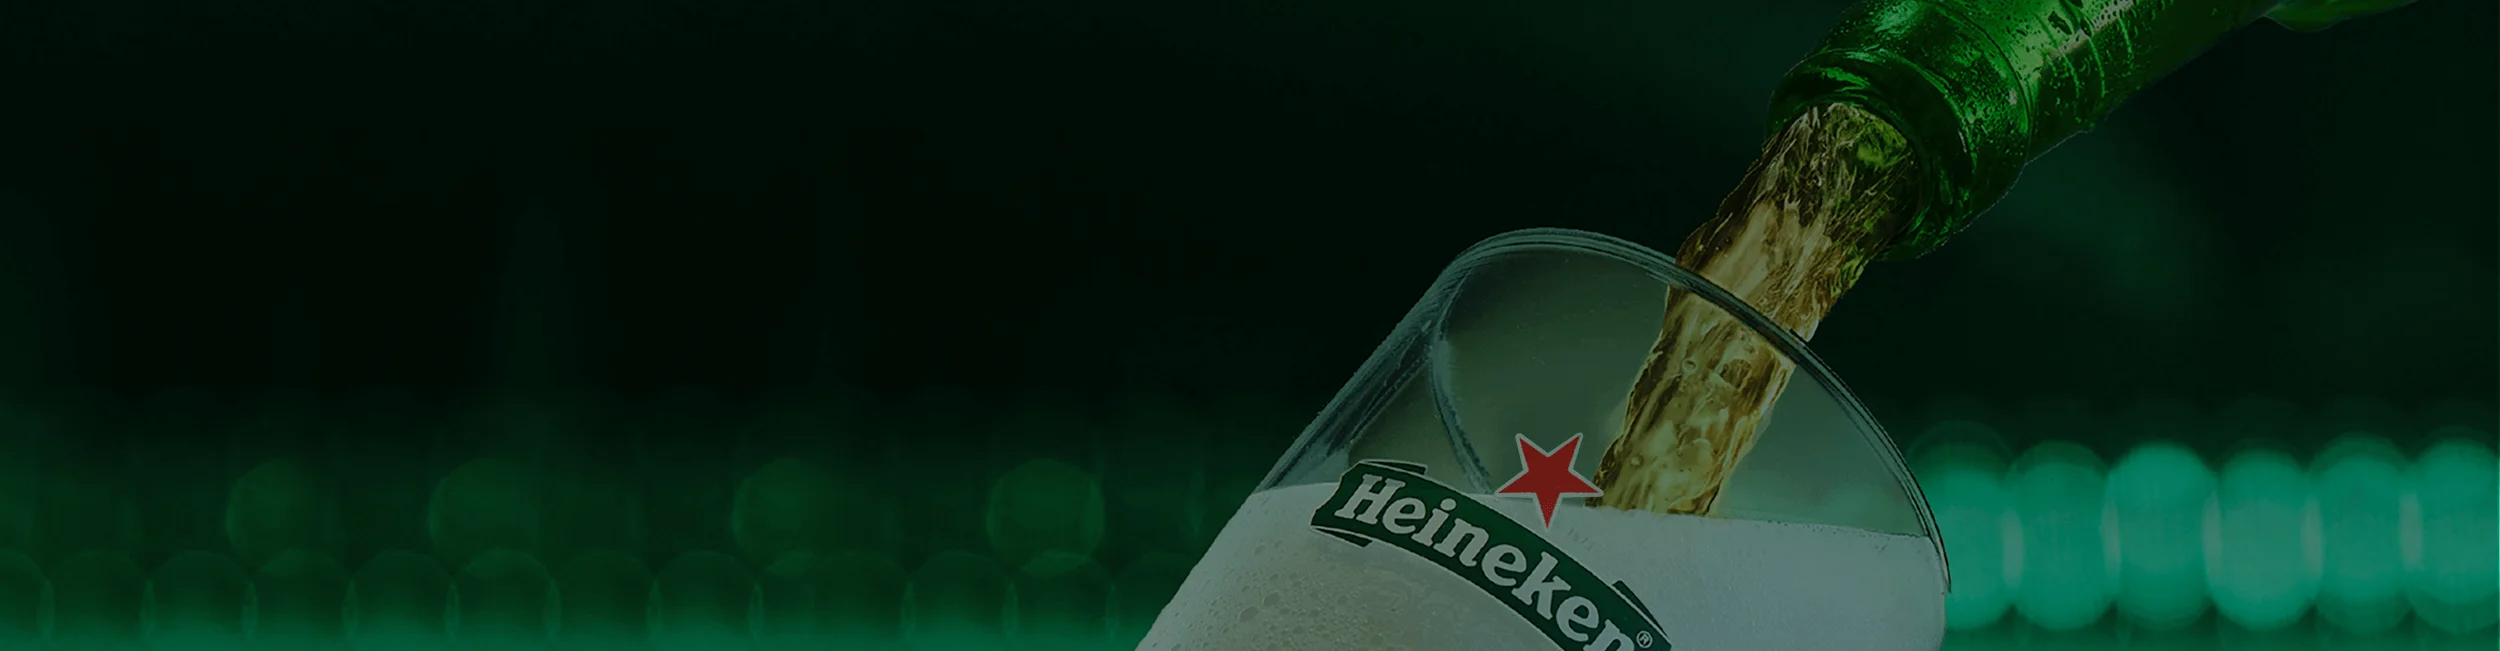 Cerveja Heineken edição especial energia verde e um copo